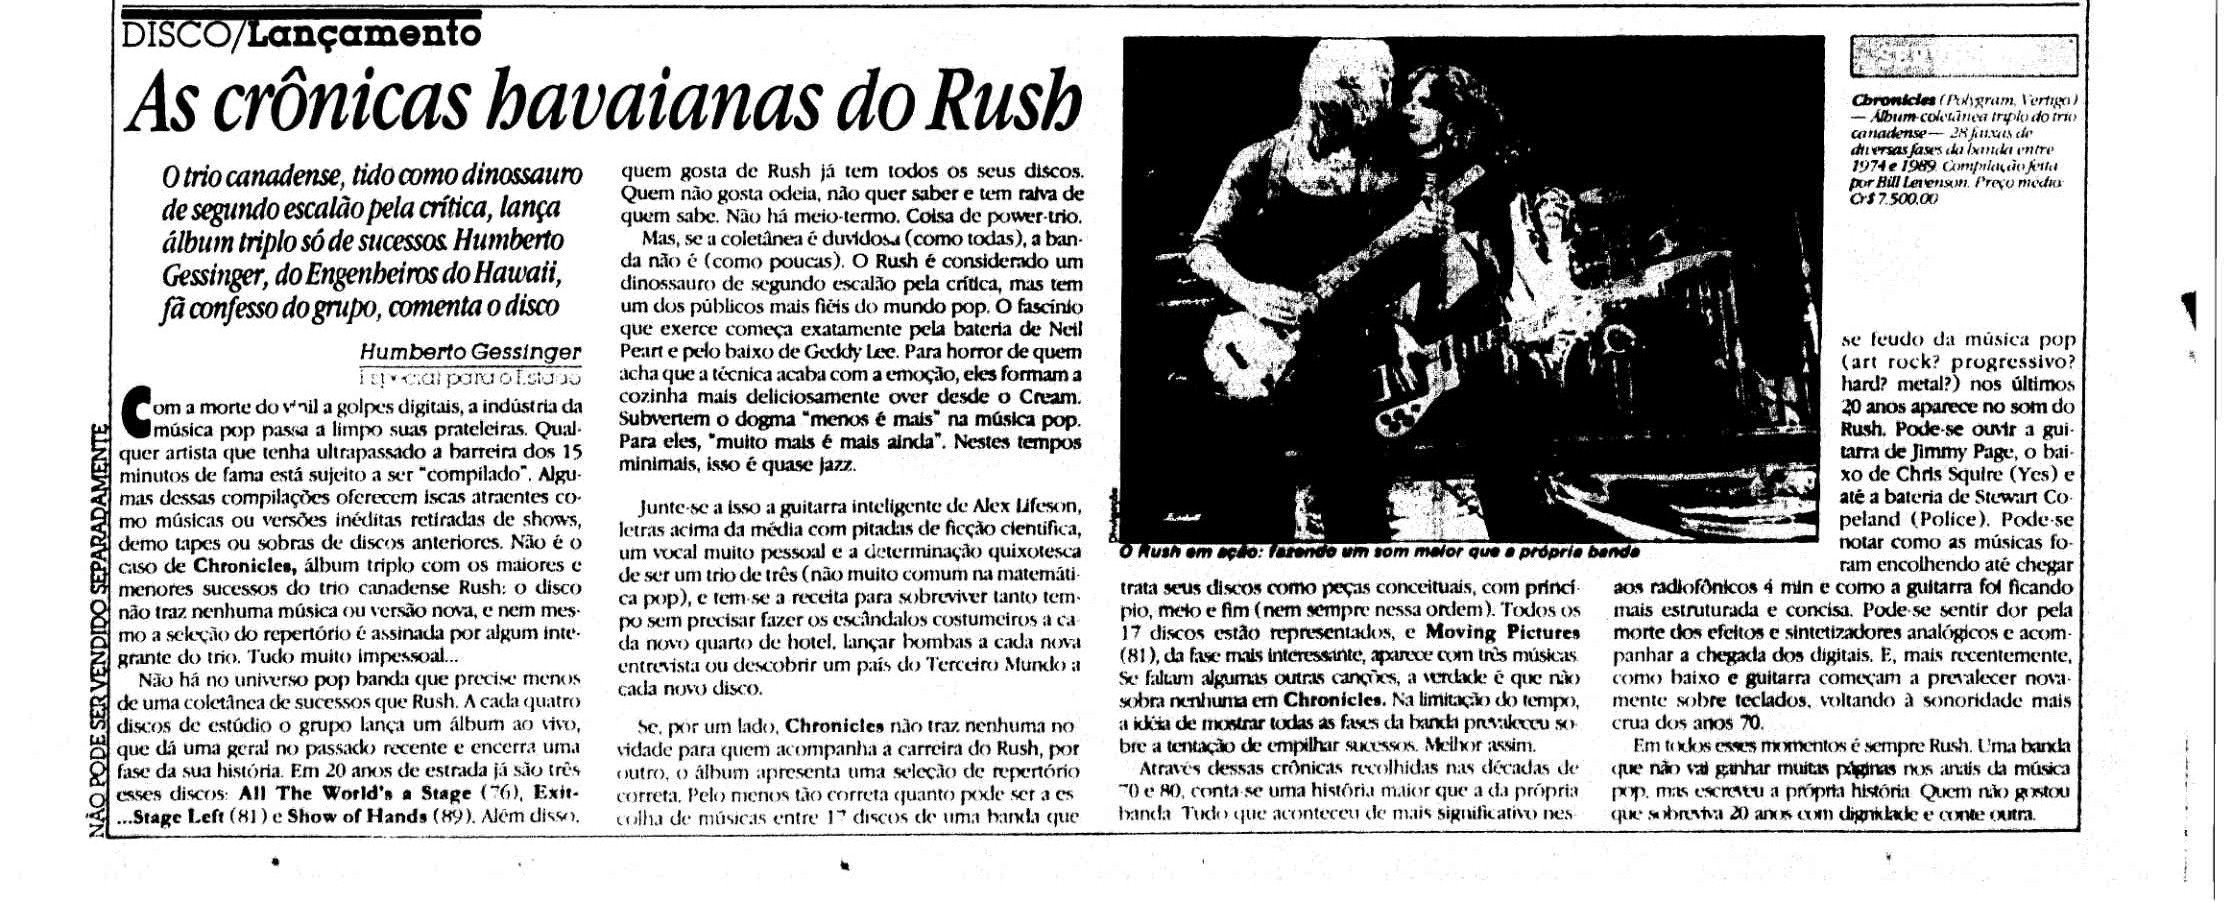 1991 - As crônicas hawaianas do Rush